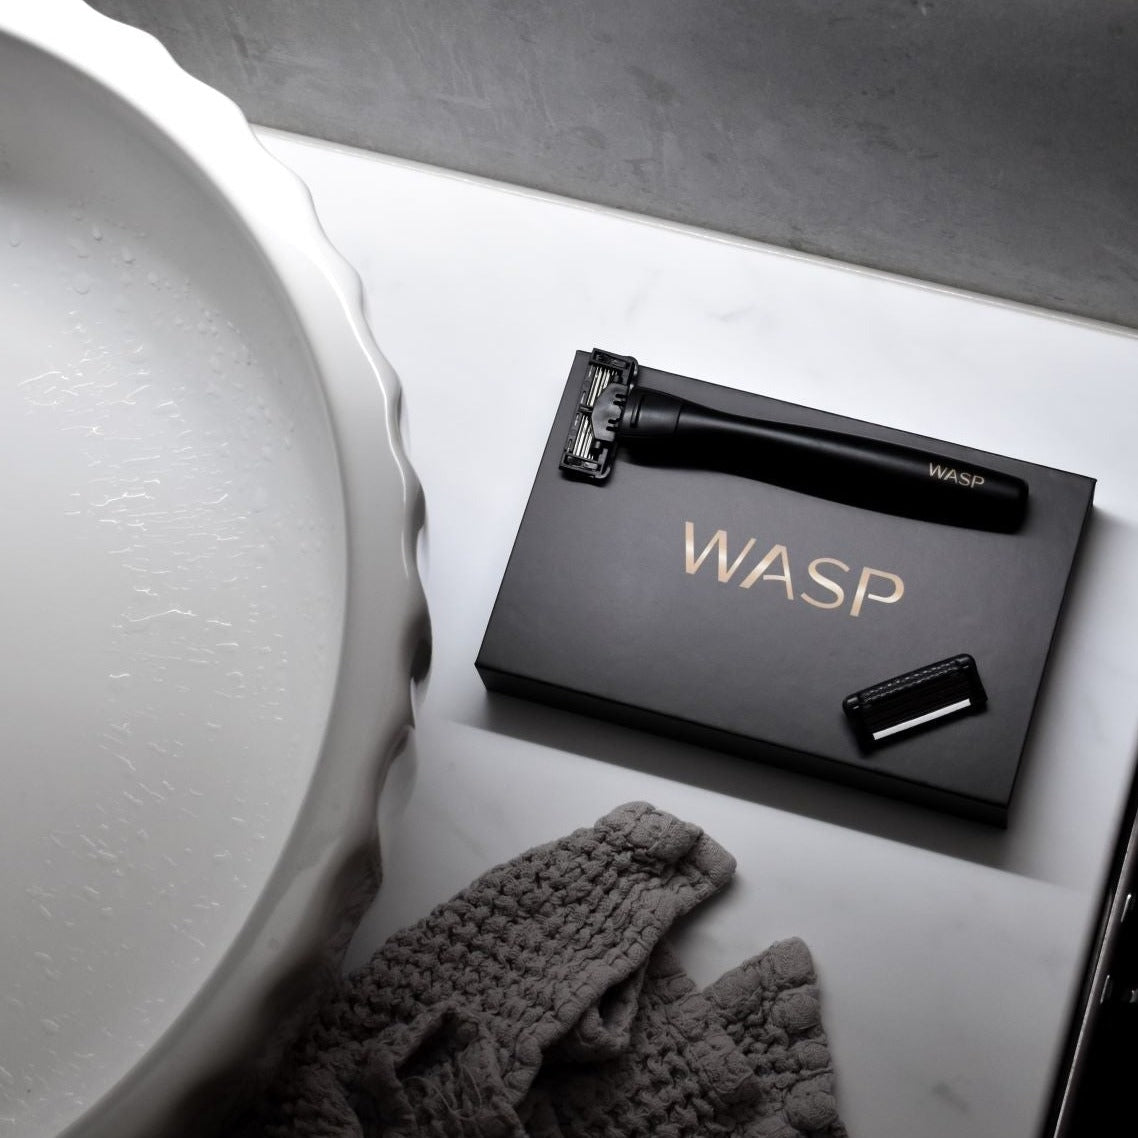 WASP startpaket - Waspshaving